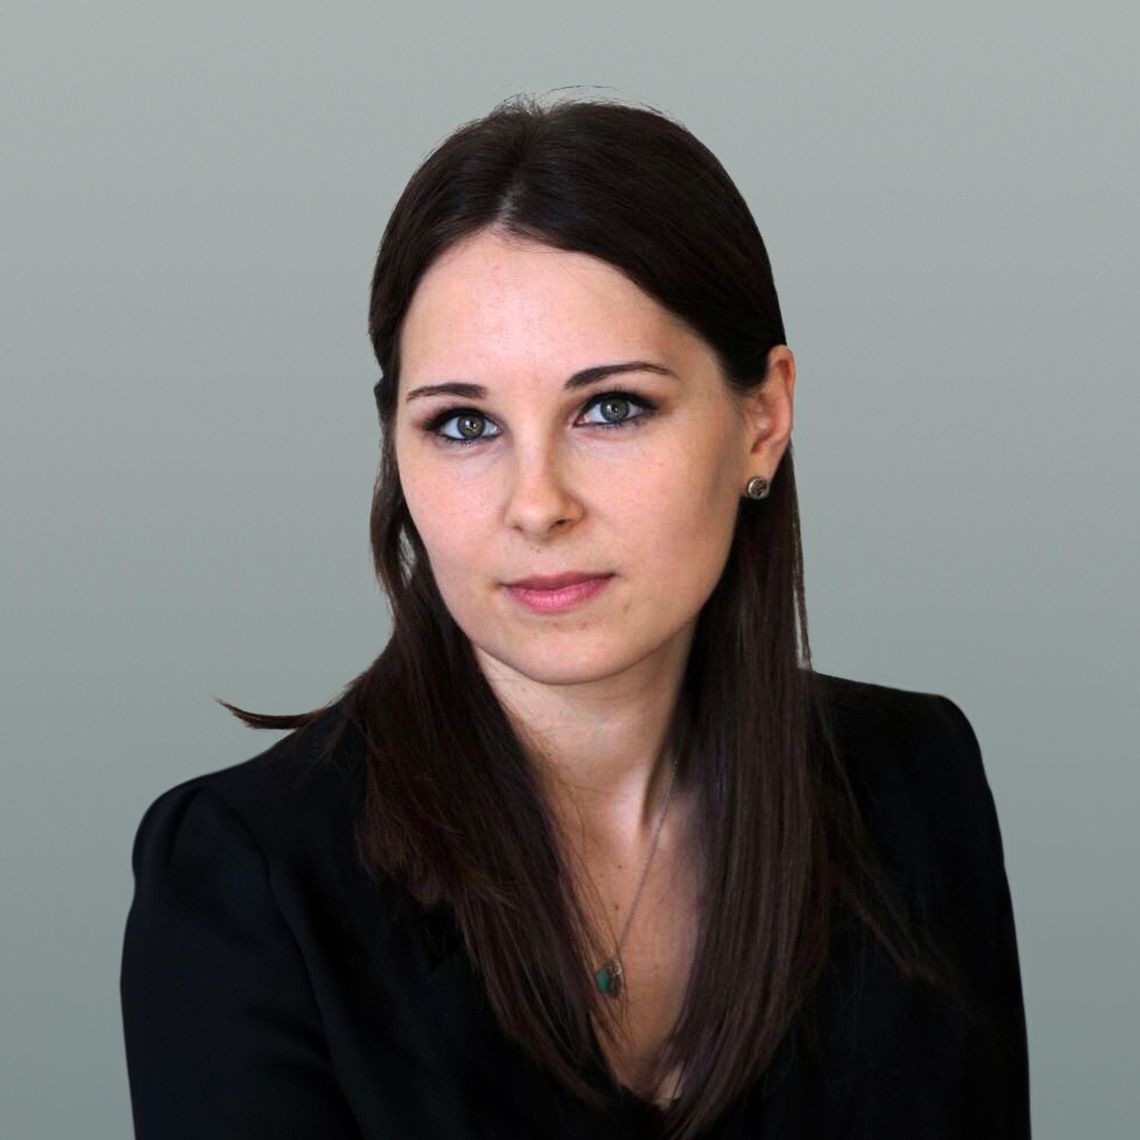 UniPage specialist Natalia Kalinichenko